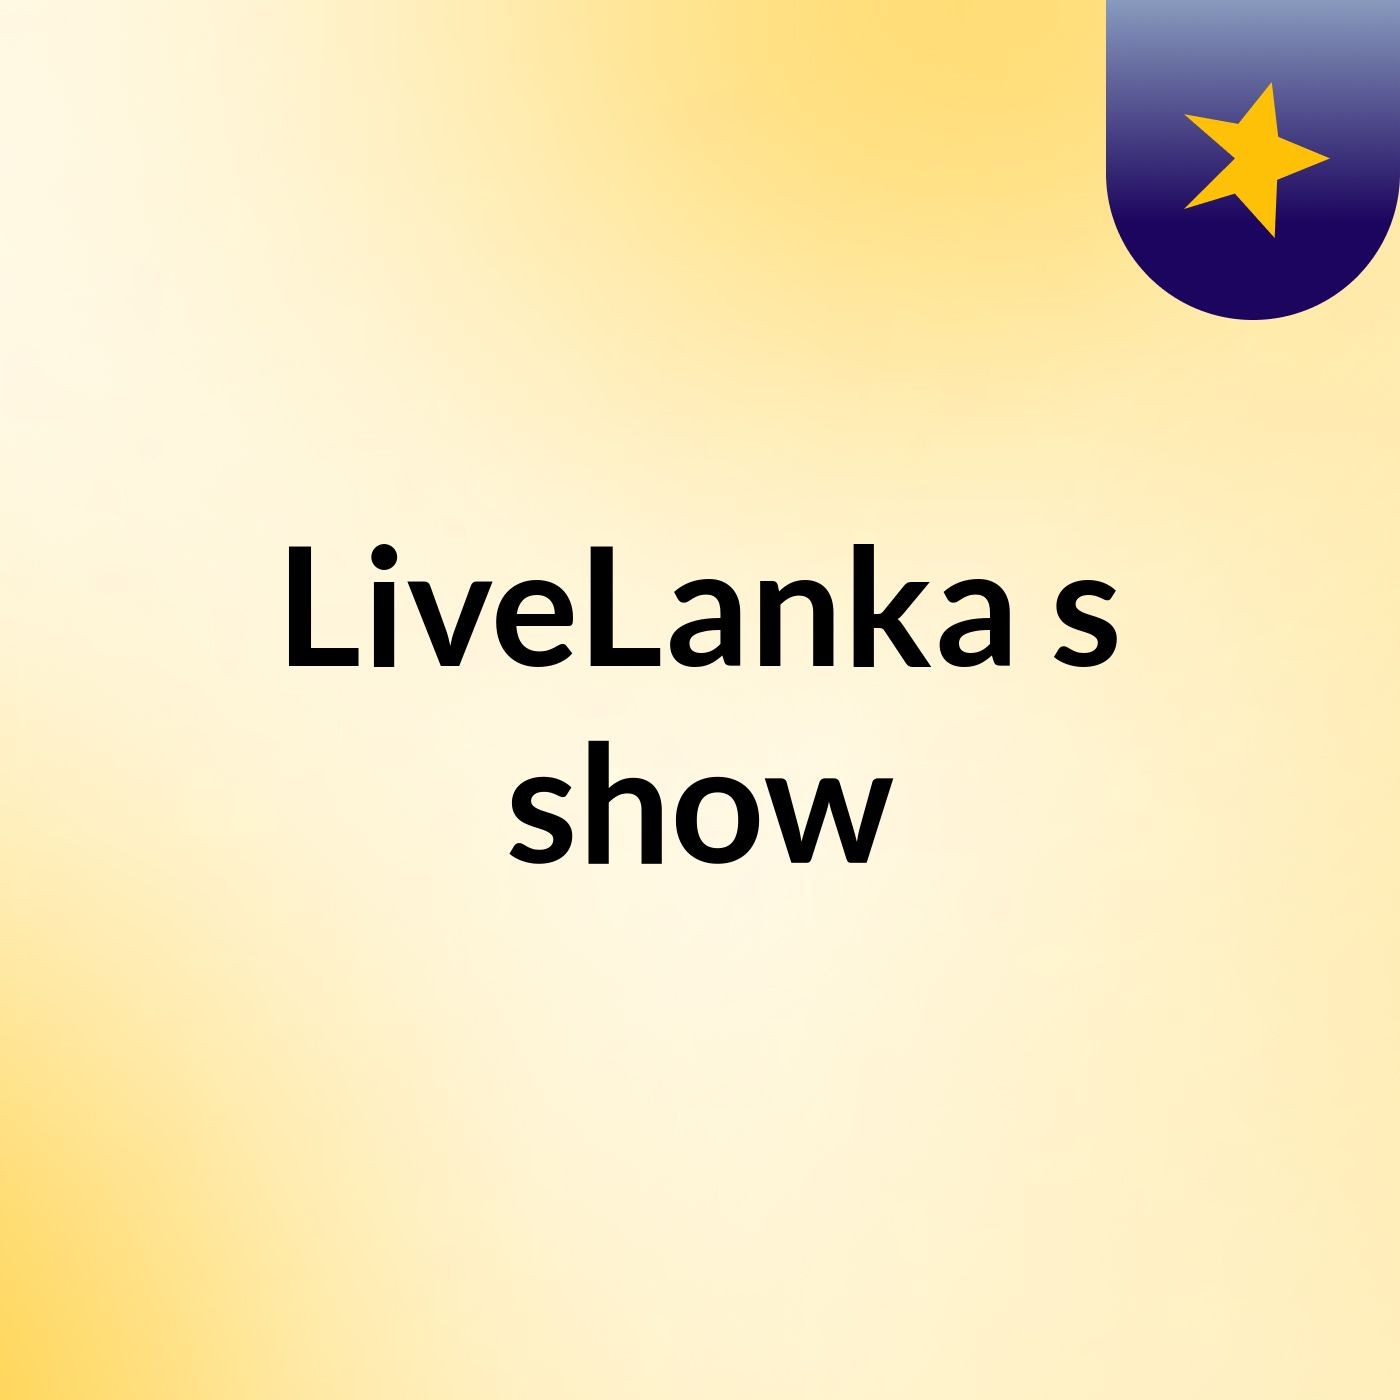 LiveLanka's show